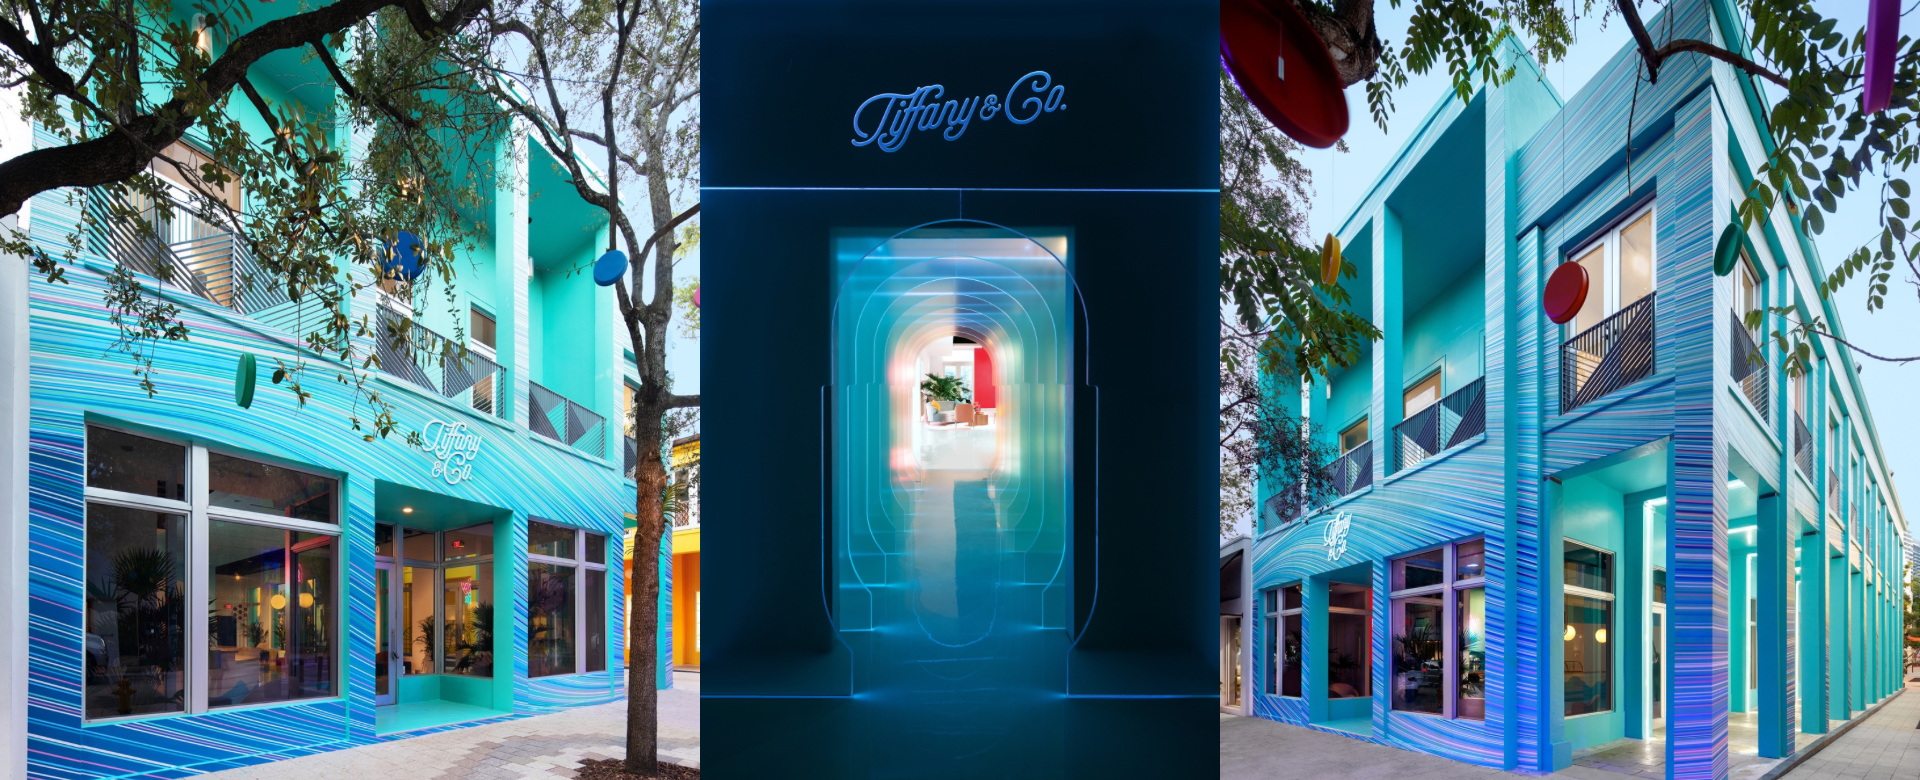 Tiffany & Co. khai trương cửa hàng Pop Up Mùa lễ hội và Tiffany Café tại Miami Design District